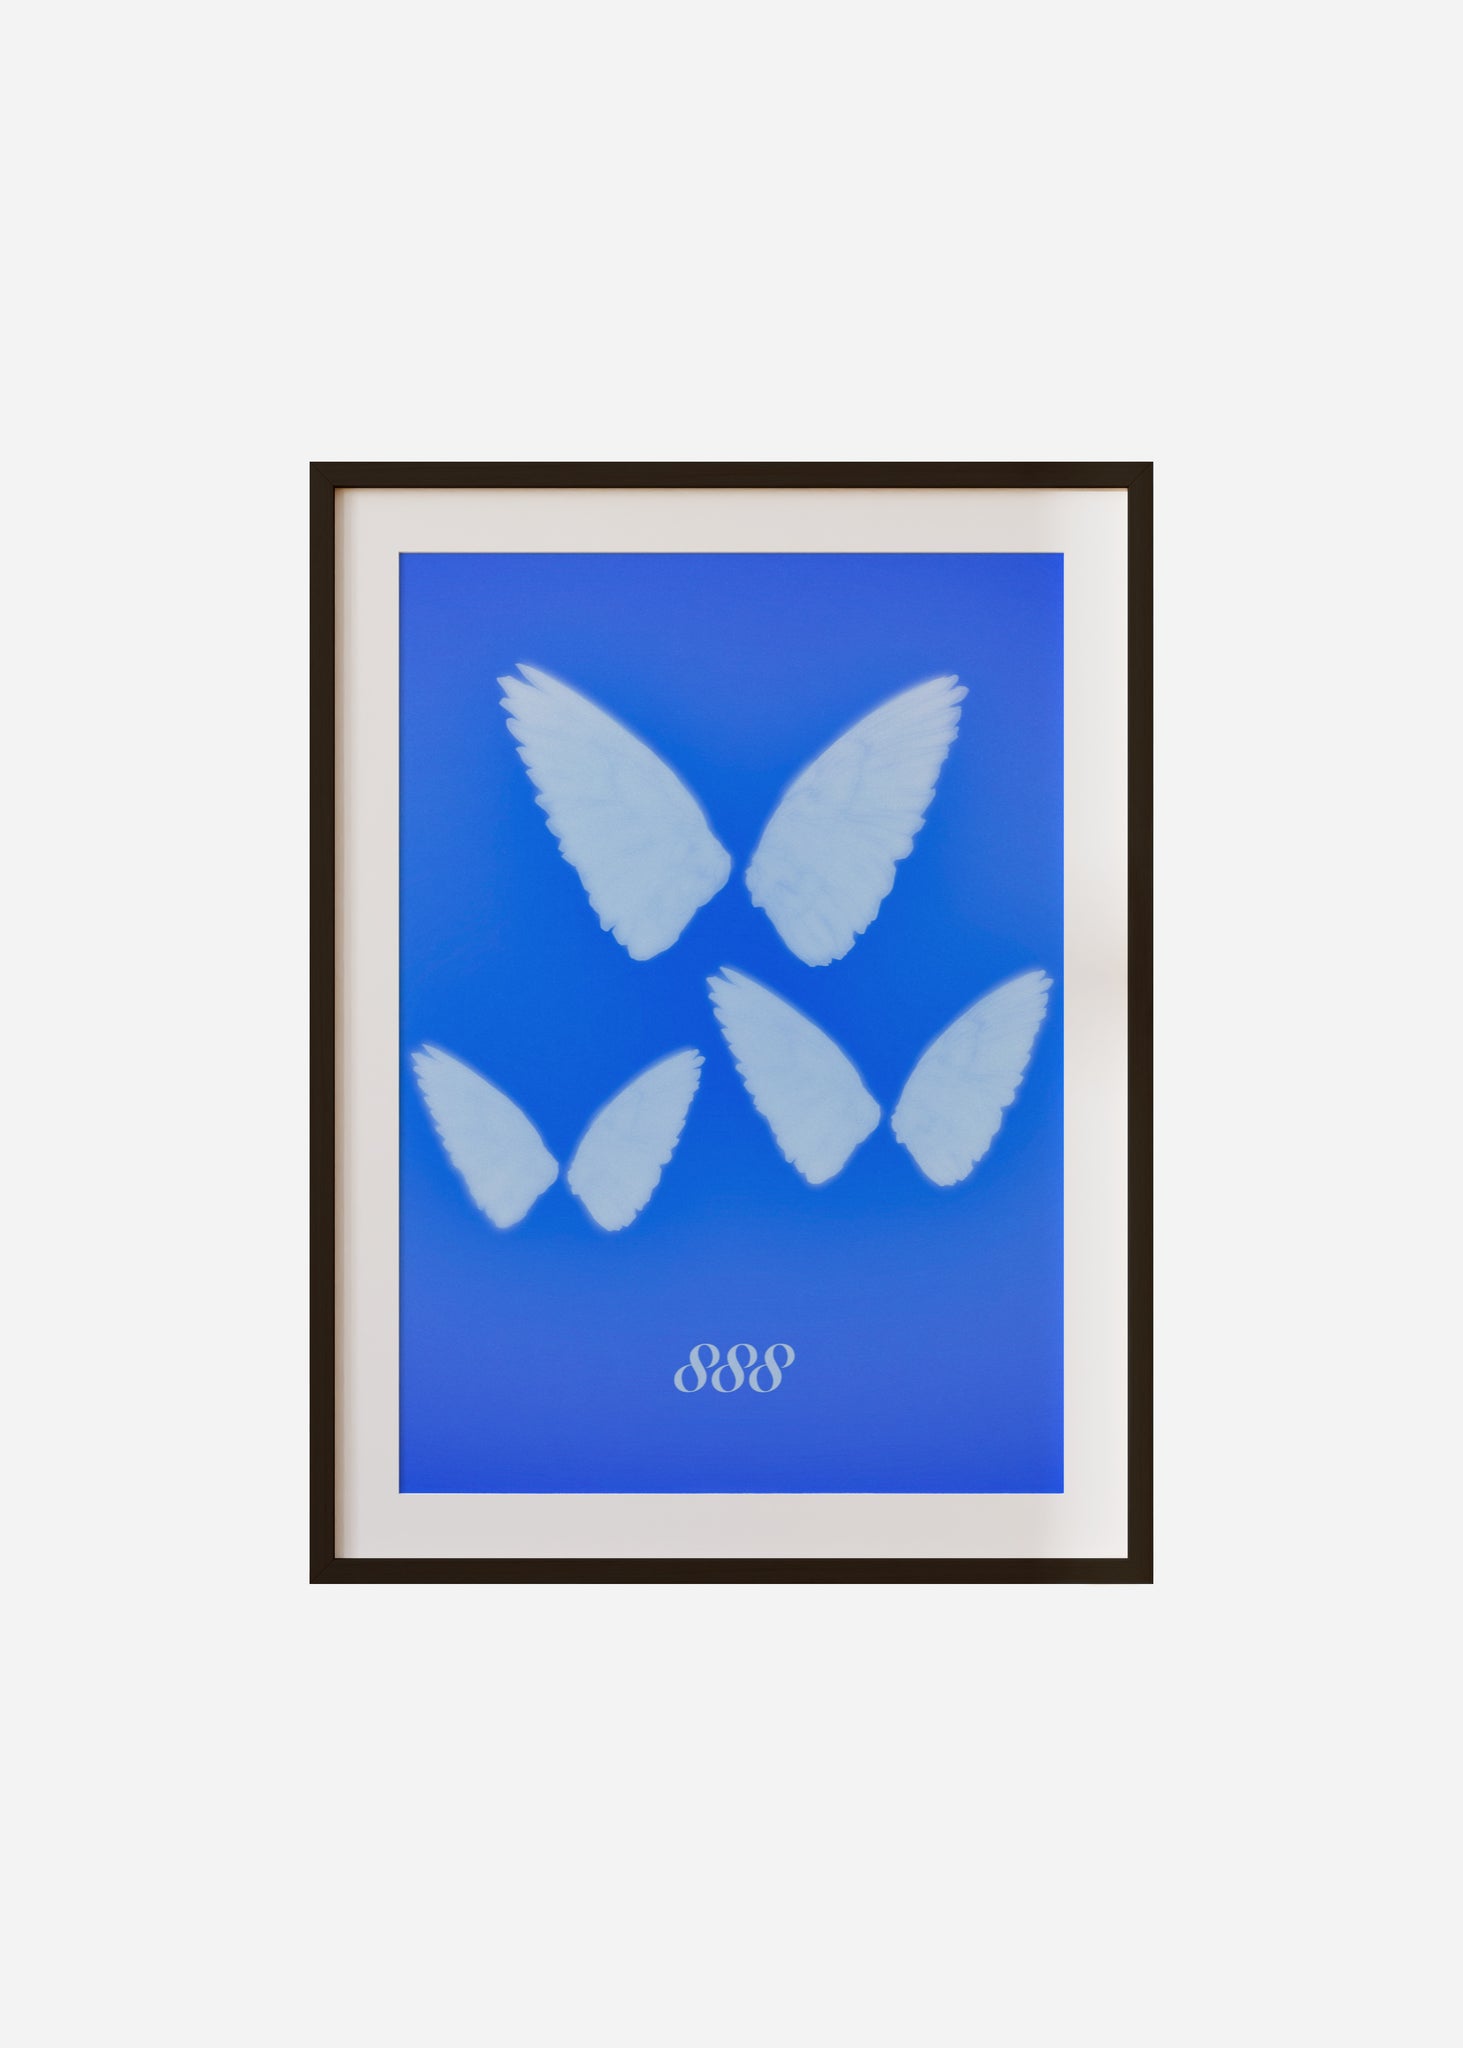 Angel Wings 888 Framed & Mounted Print